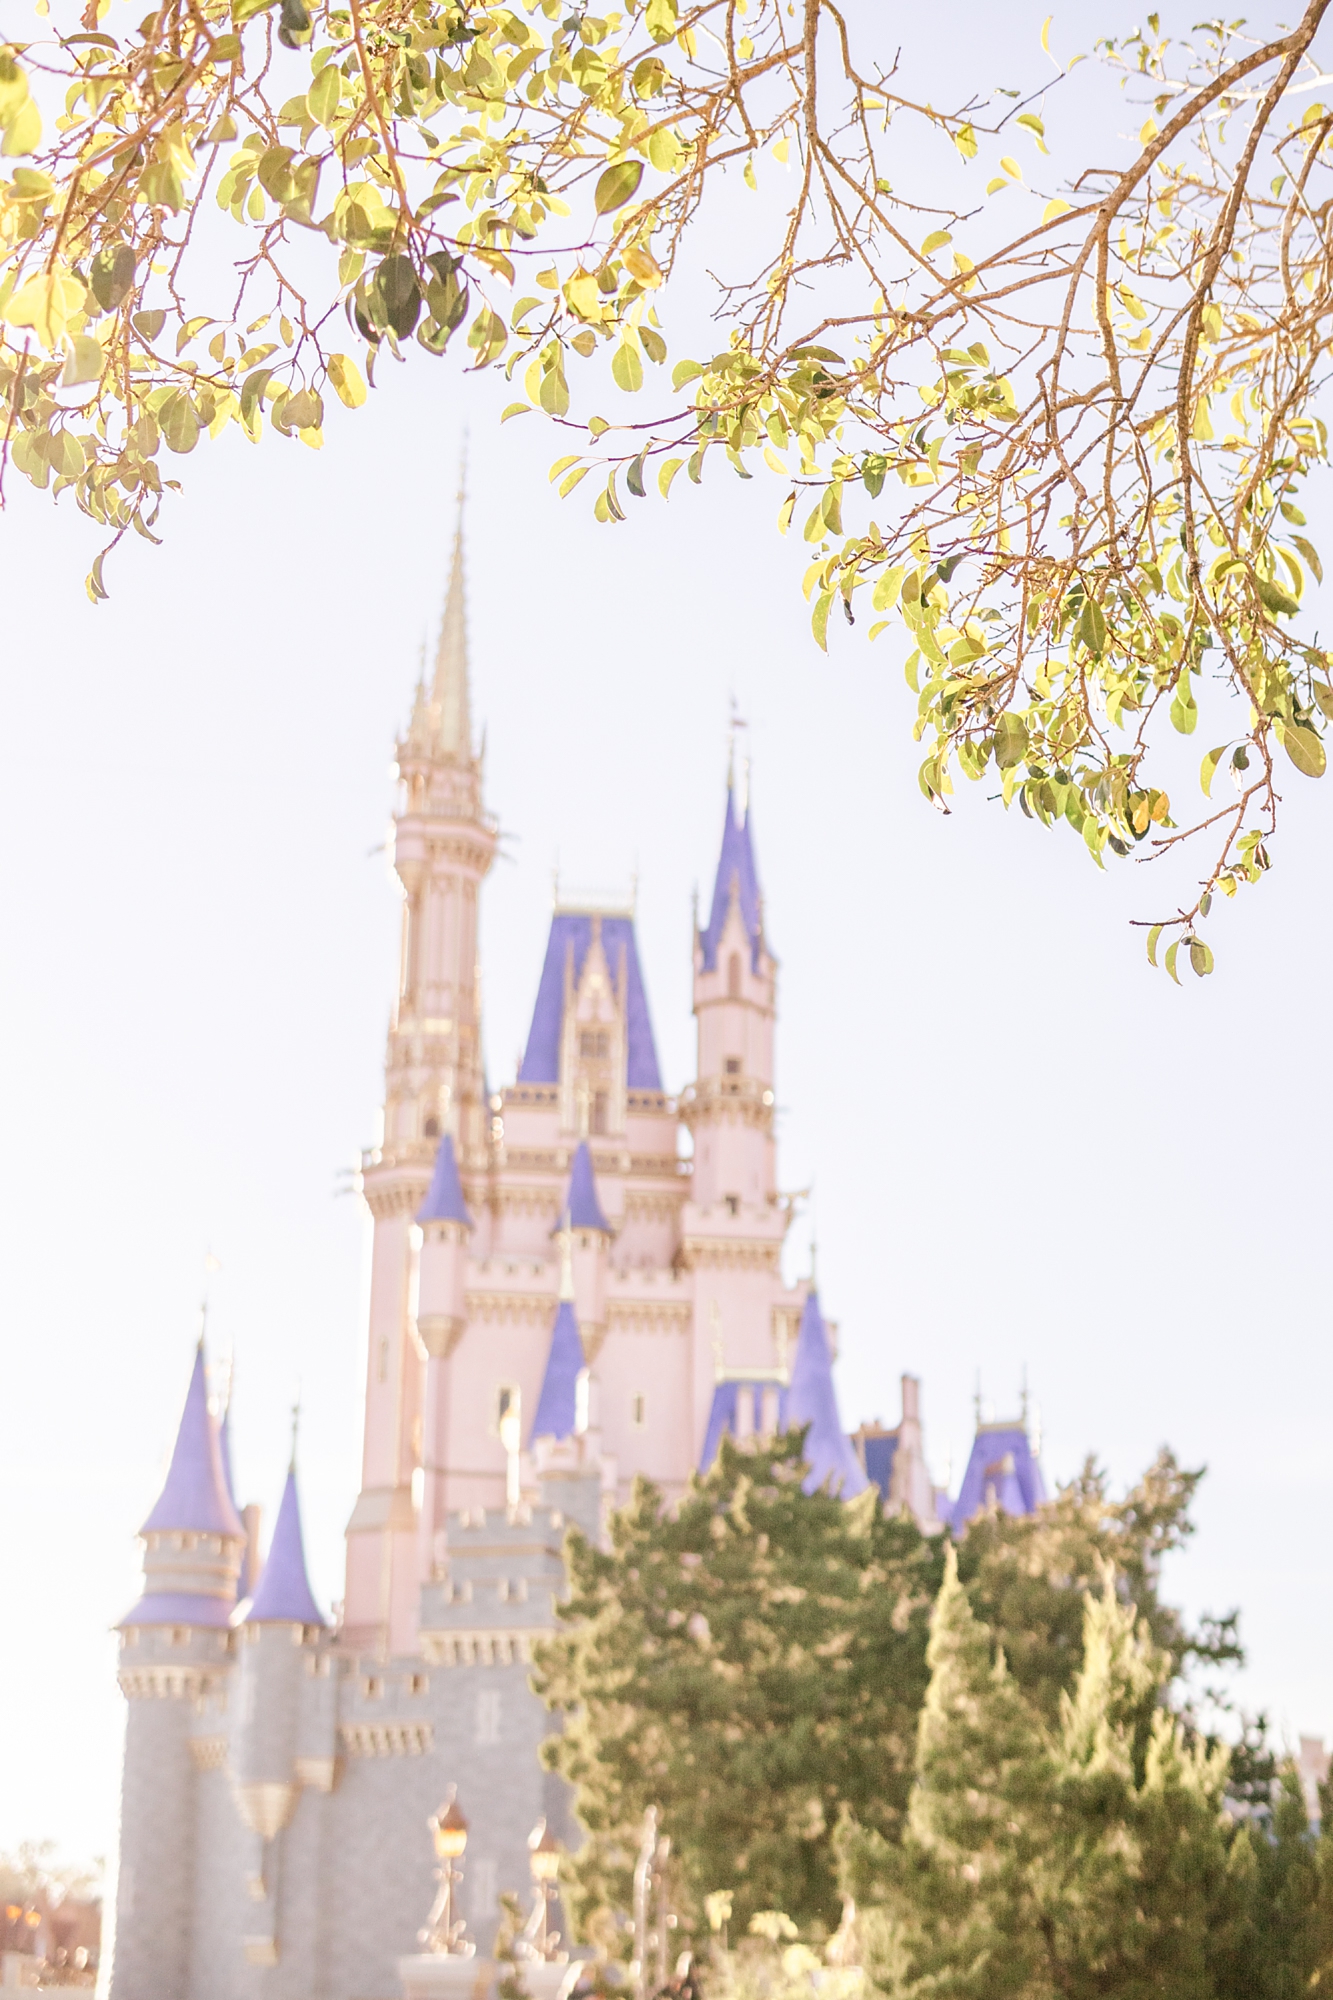 Cinderella's Castle in Orlando FL